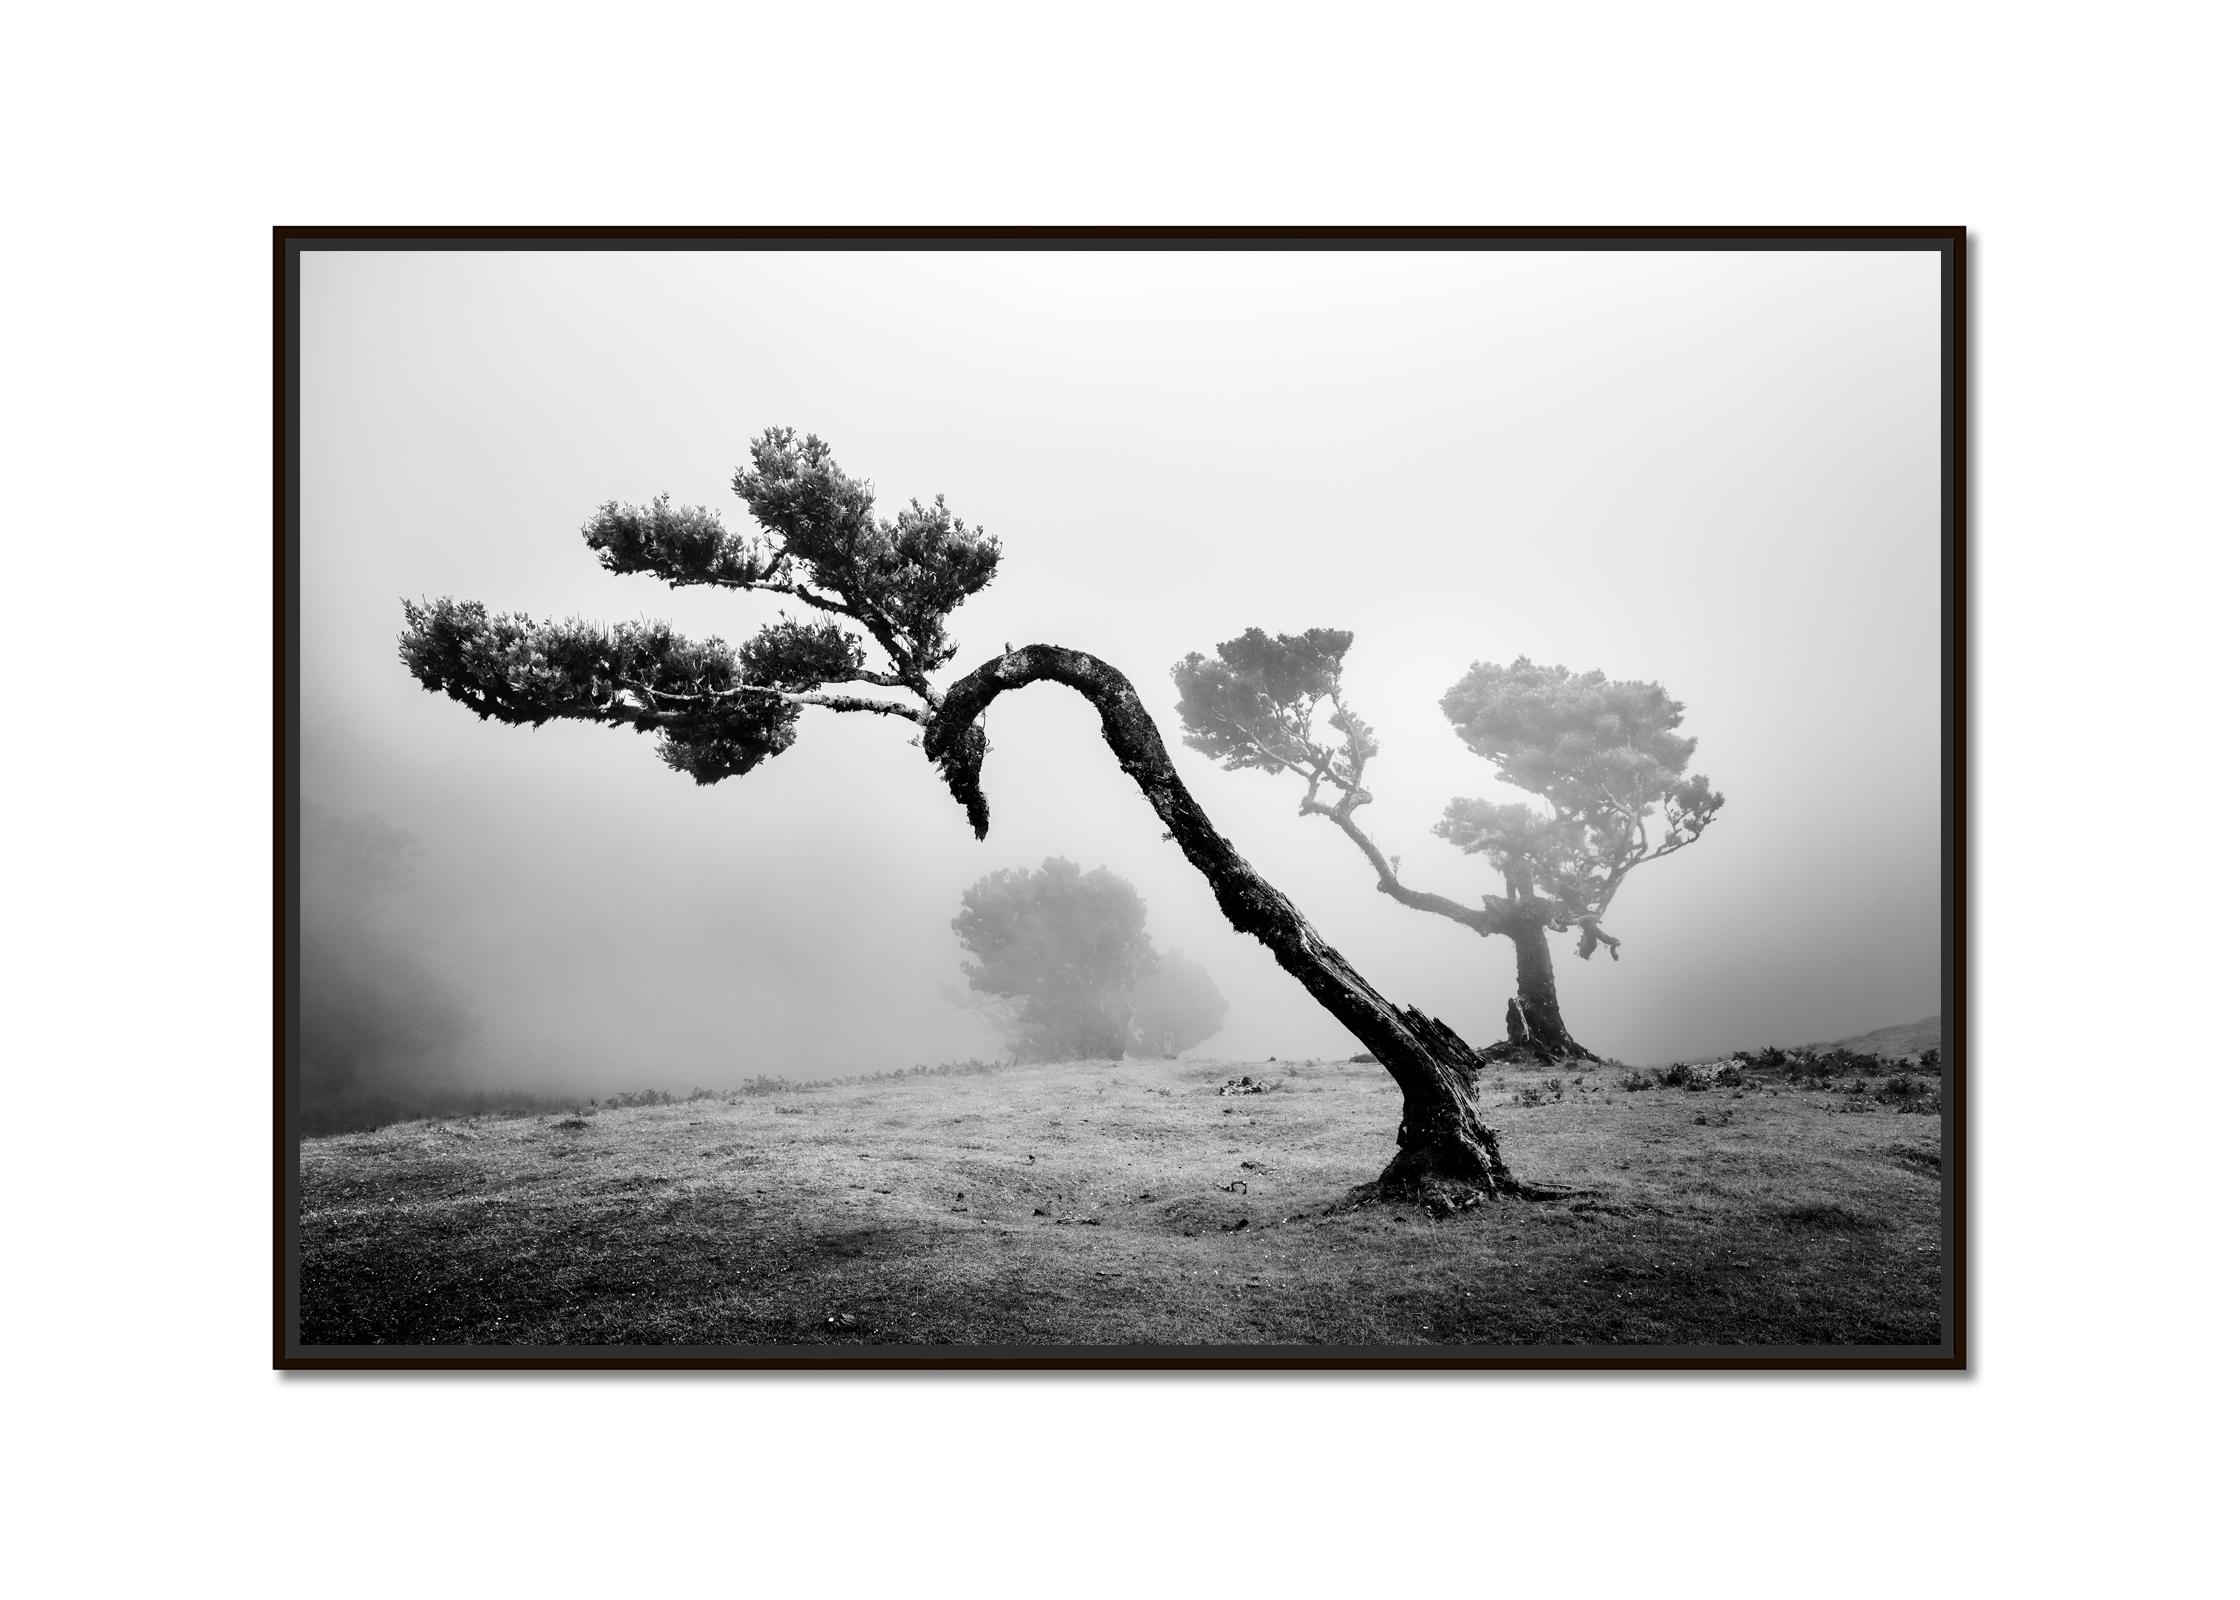 Antiker Laurisilva-Wälder, geschwungener Baum, Schwarz-Weiß-Fotografie, Landschaft – Photograph von Gerald Berghammer